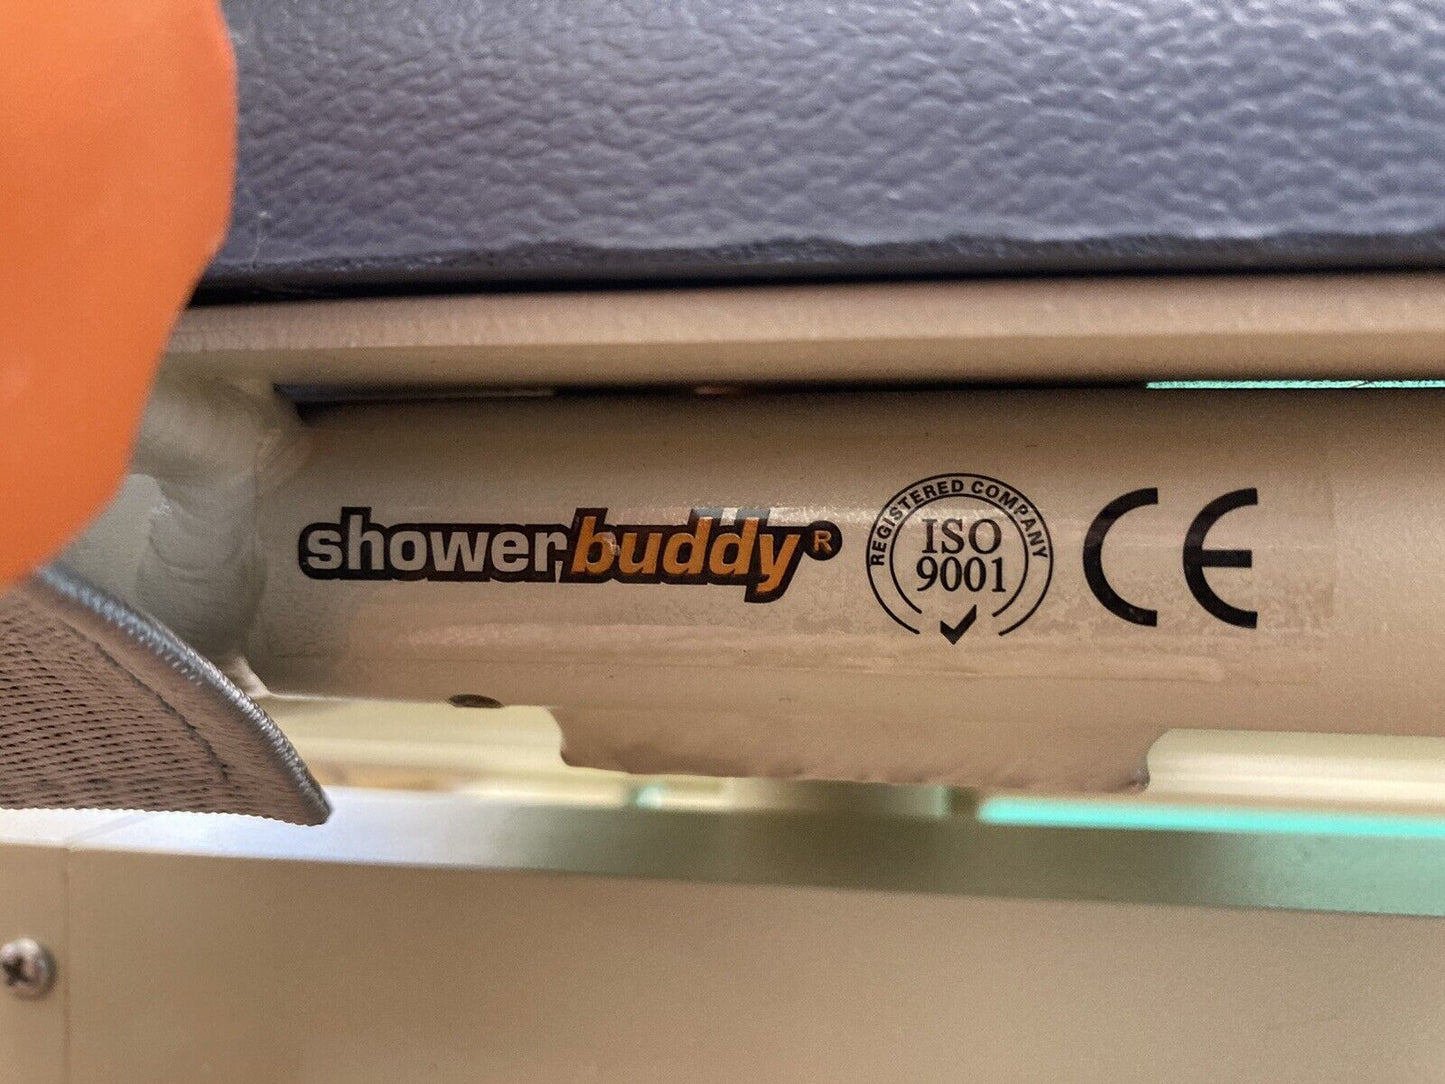 ShowerBuddy TubBuddy SB2 Bath / Shower / Tub Transfer System #LM7531